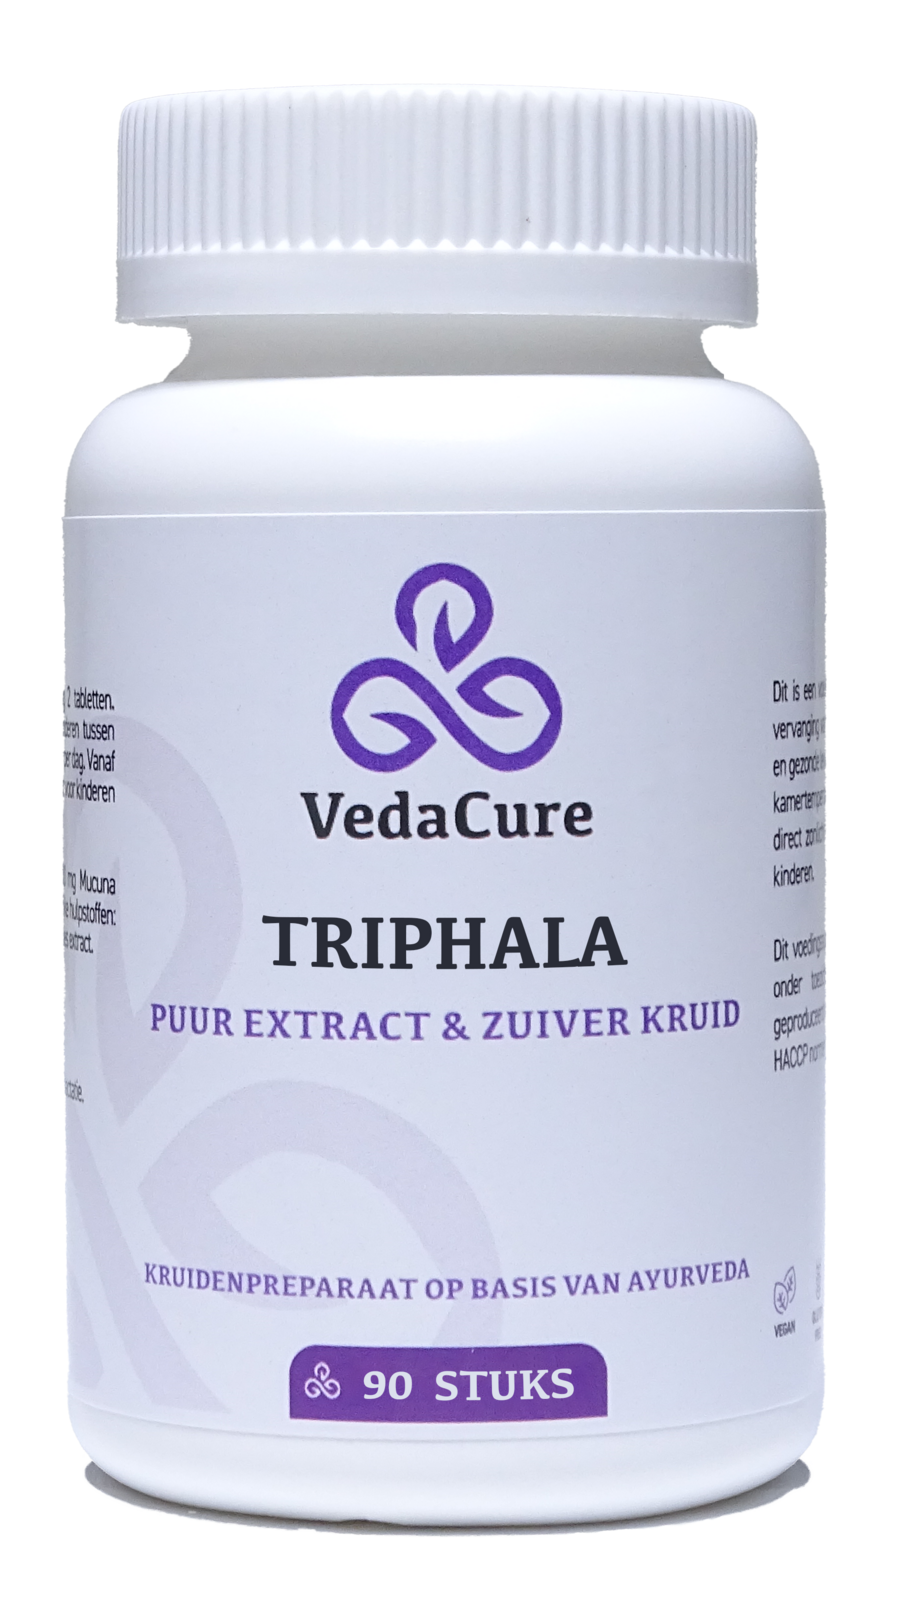 VedaCure VedaCure Triphala Tabletten